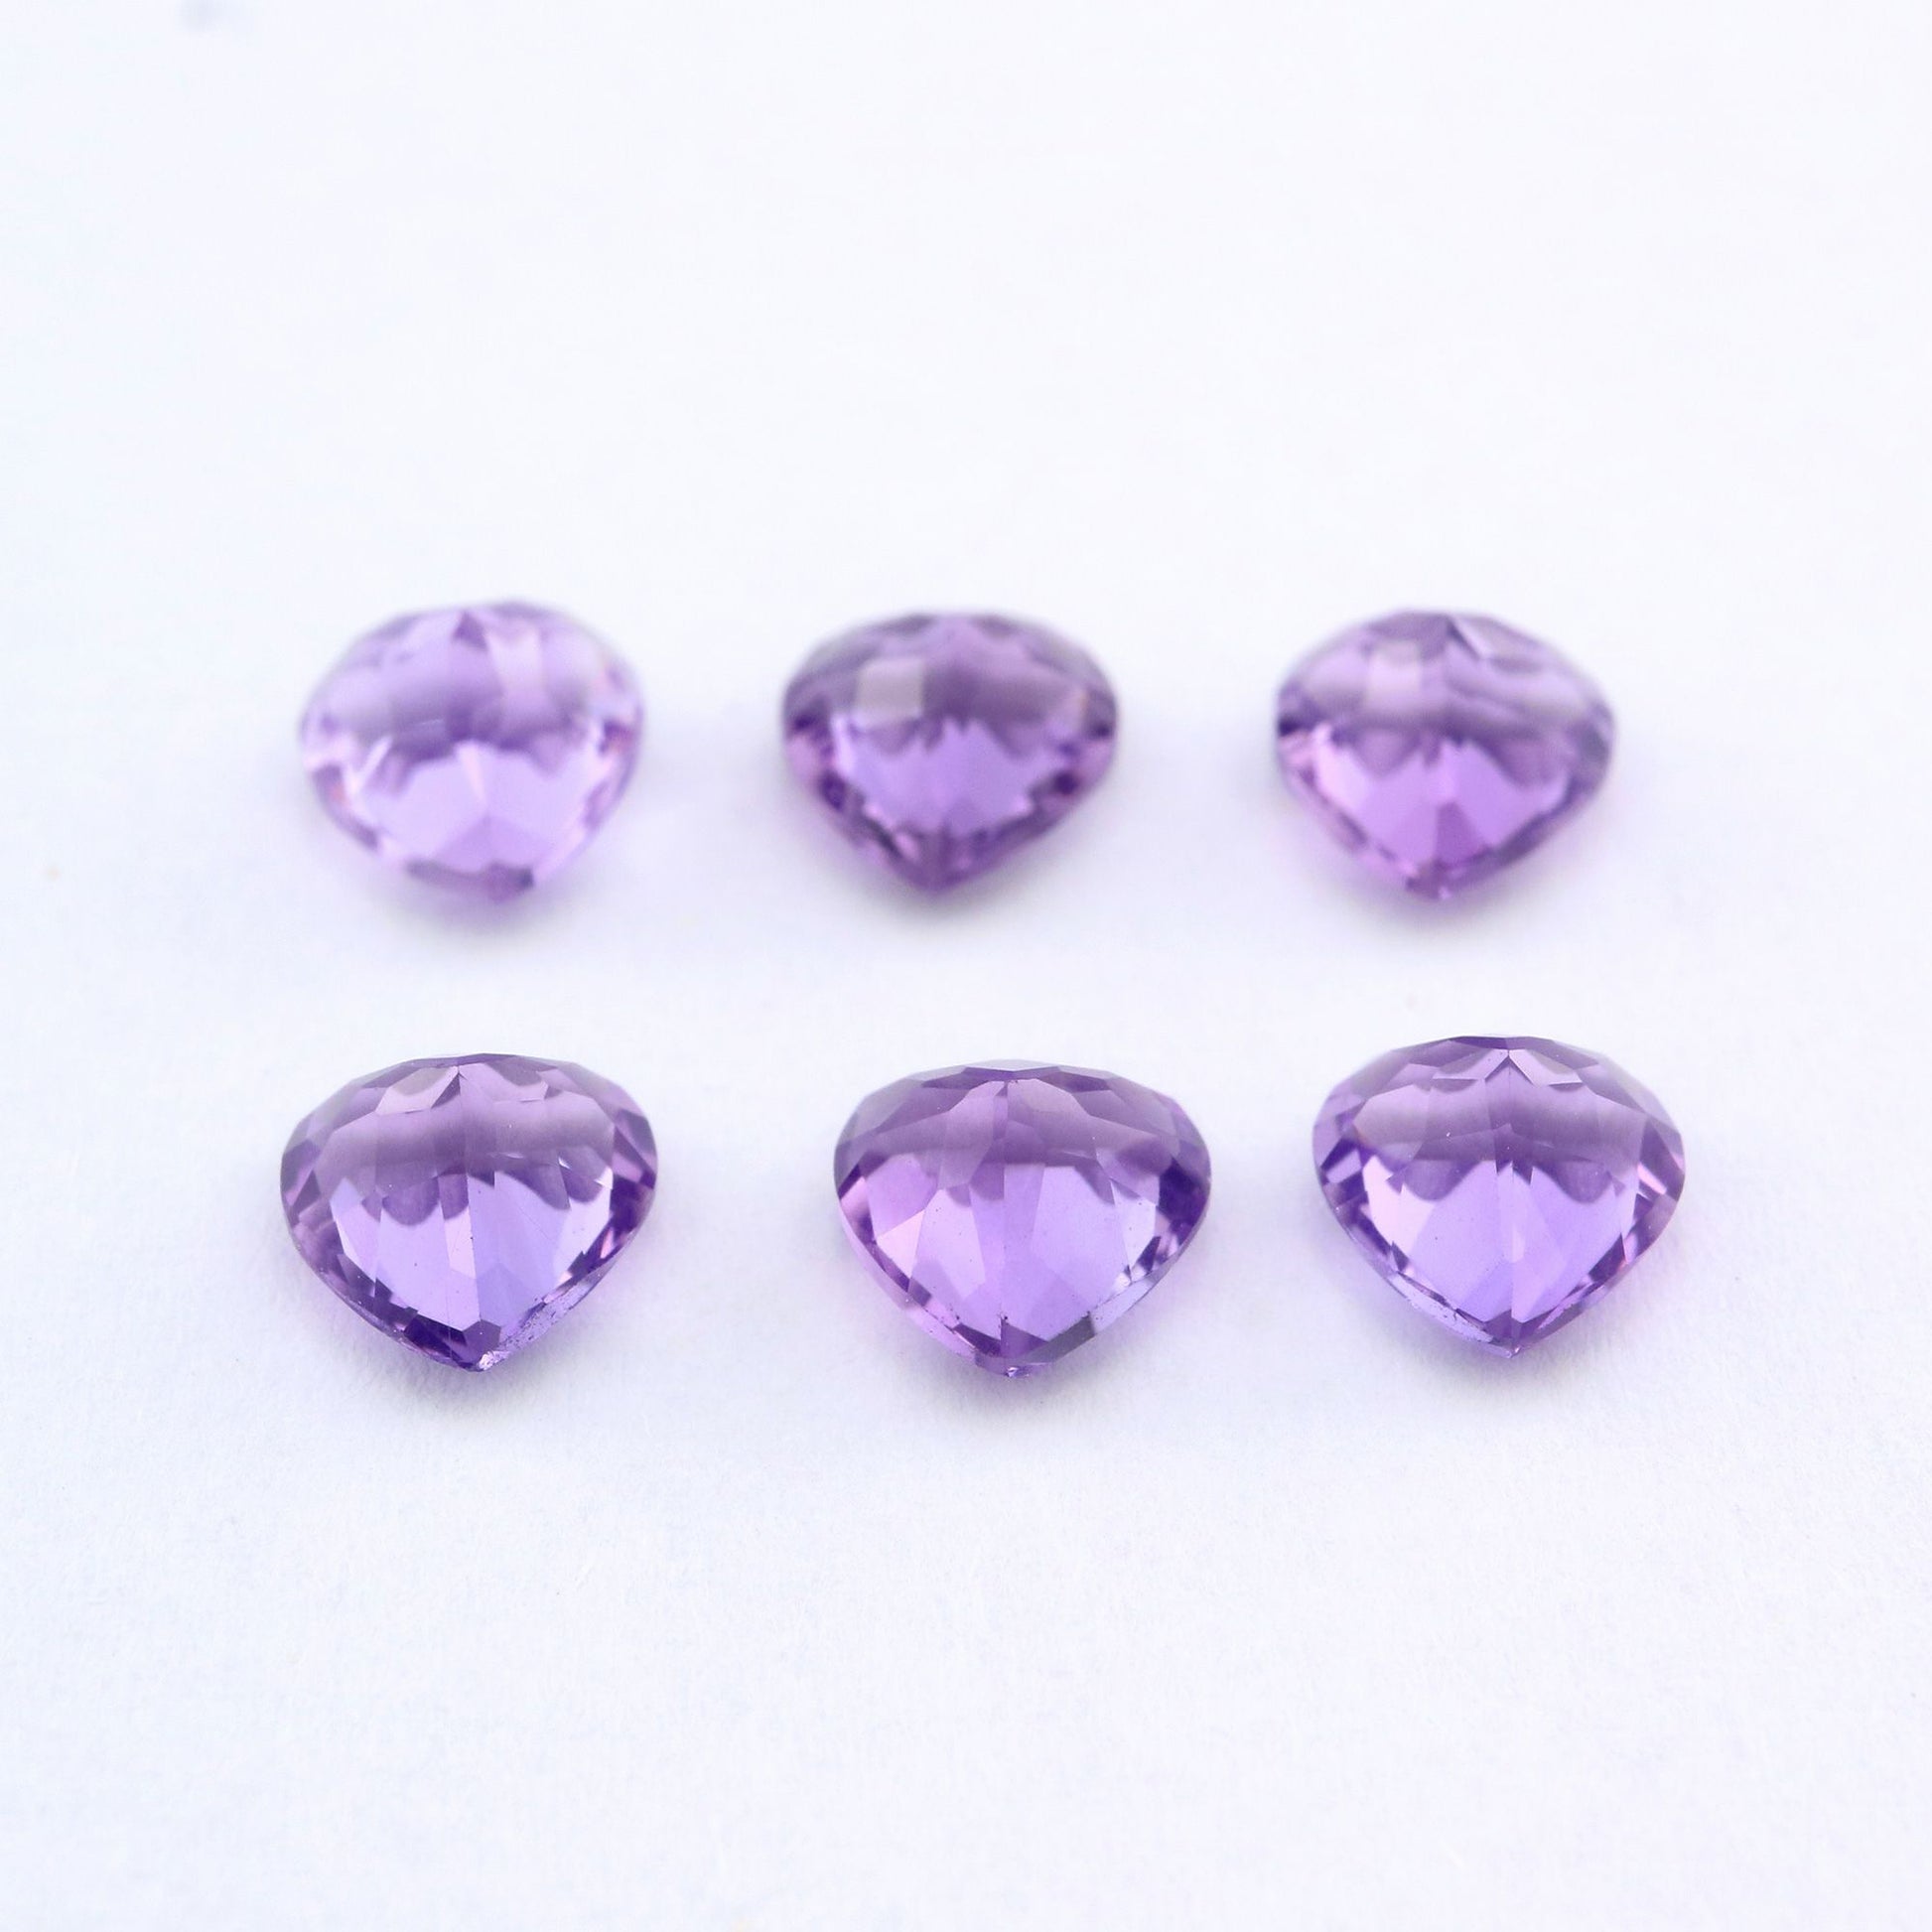 Six heart cut purple amethysts.